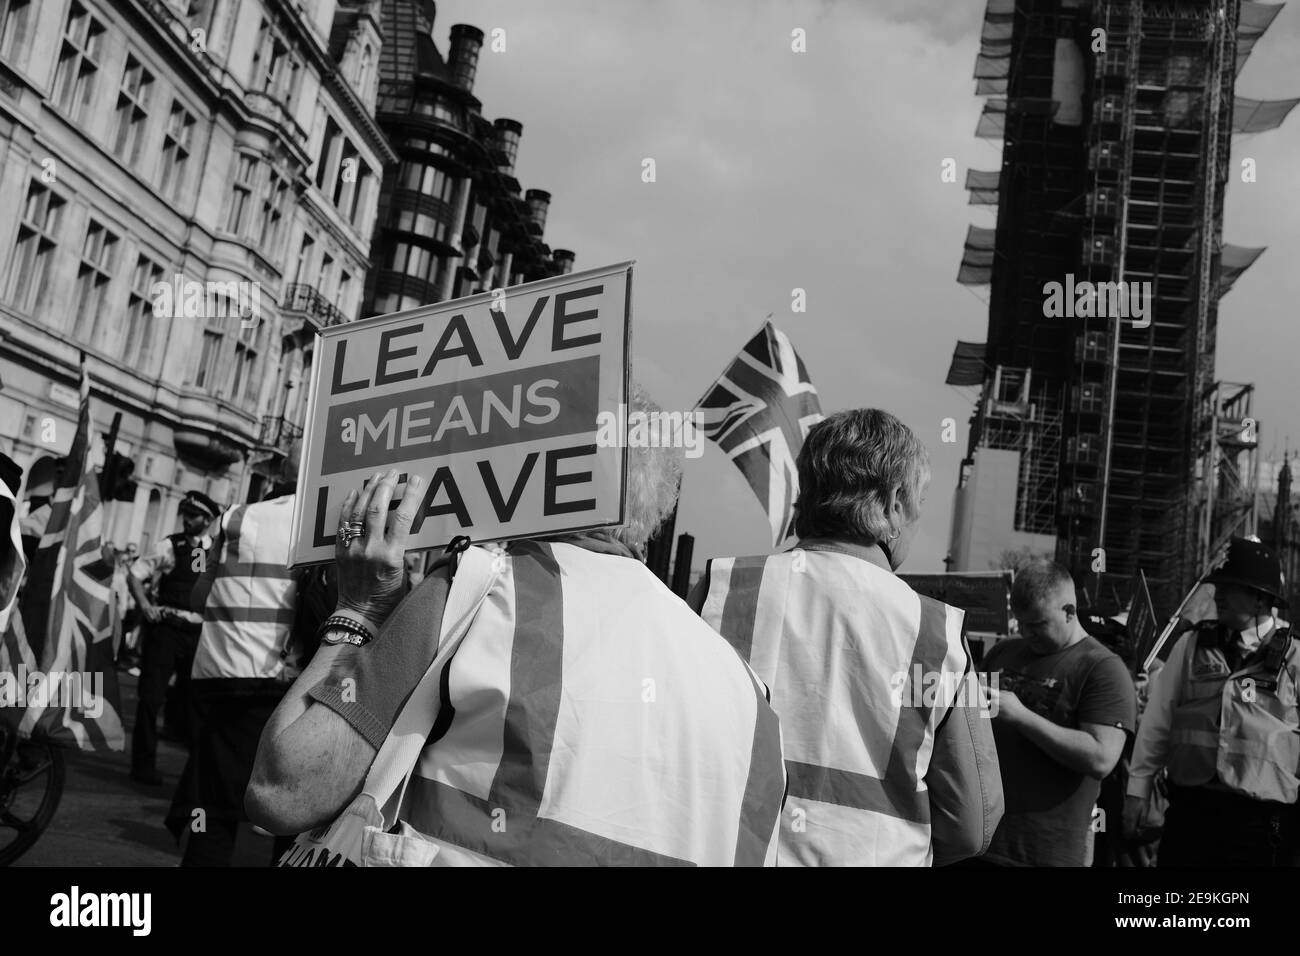 LONDRES - 2019 : les manifestants qui veulent quitter l'Union européenne devant le Parlement avec un écriteau qui indique « Leave signifie Leave ». Banque D'Images